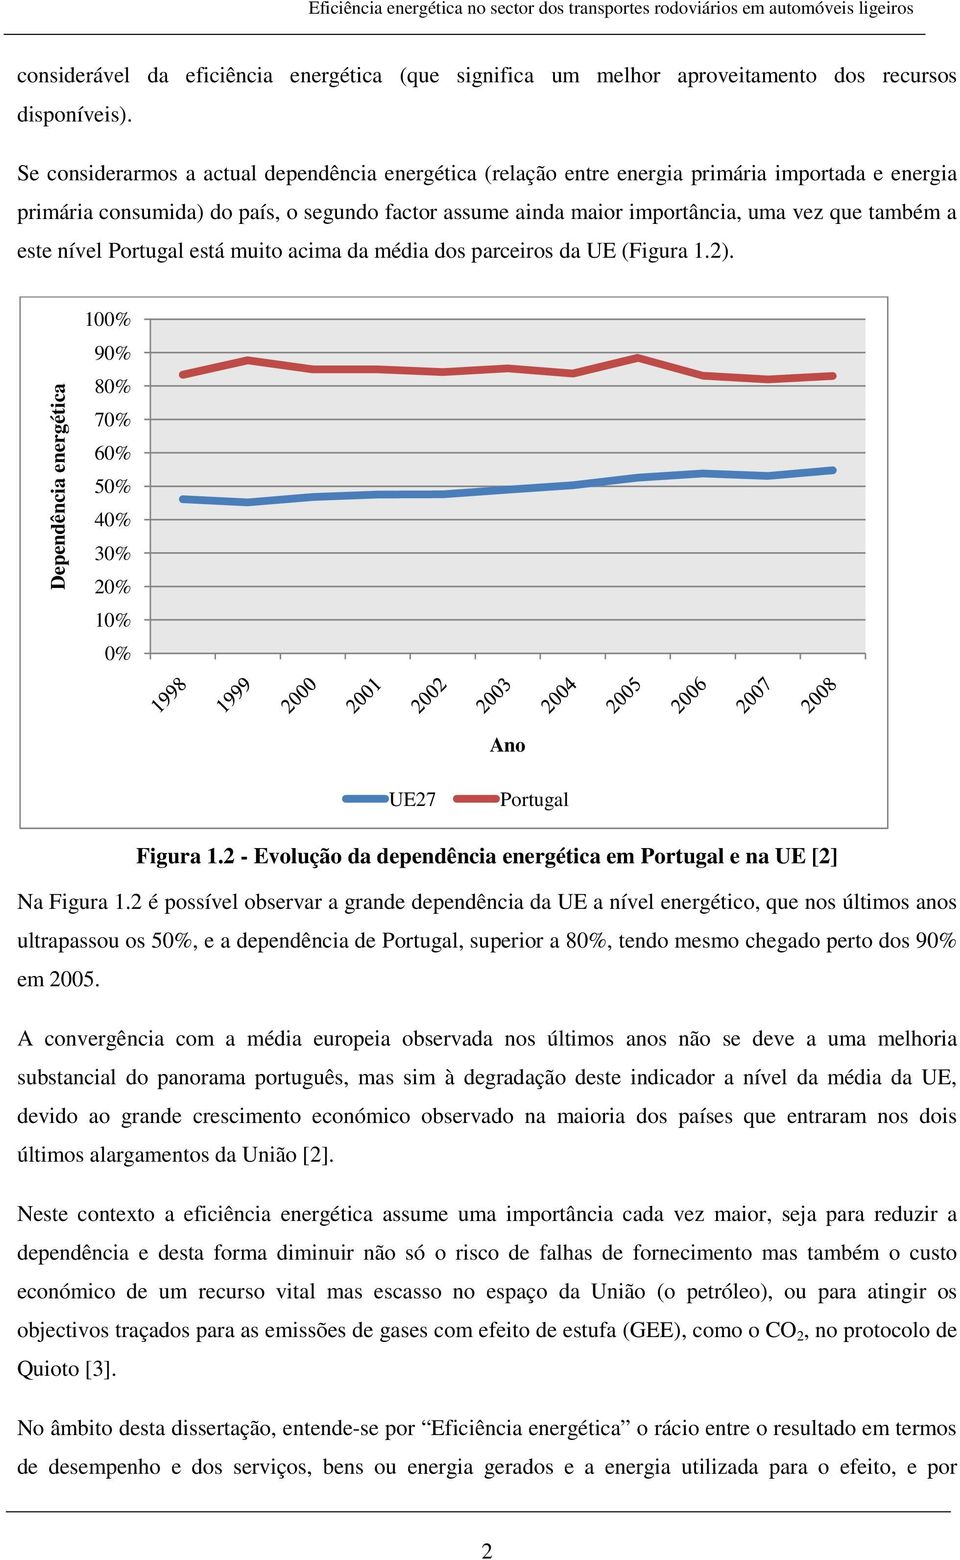 este nível Portugal está muito acima da média dos parceiros da UE (Figura 1.2). Dependência energética 100% 90% 80% 70% 60% 50% 40% 30% 20% 10% 0% Ano UE27 Portugal Figura 1.